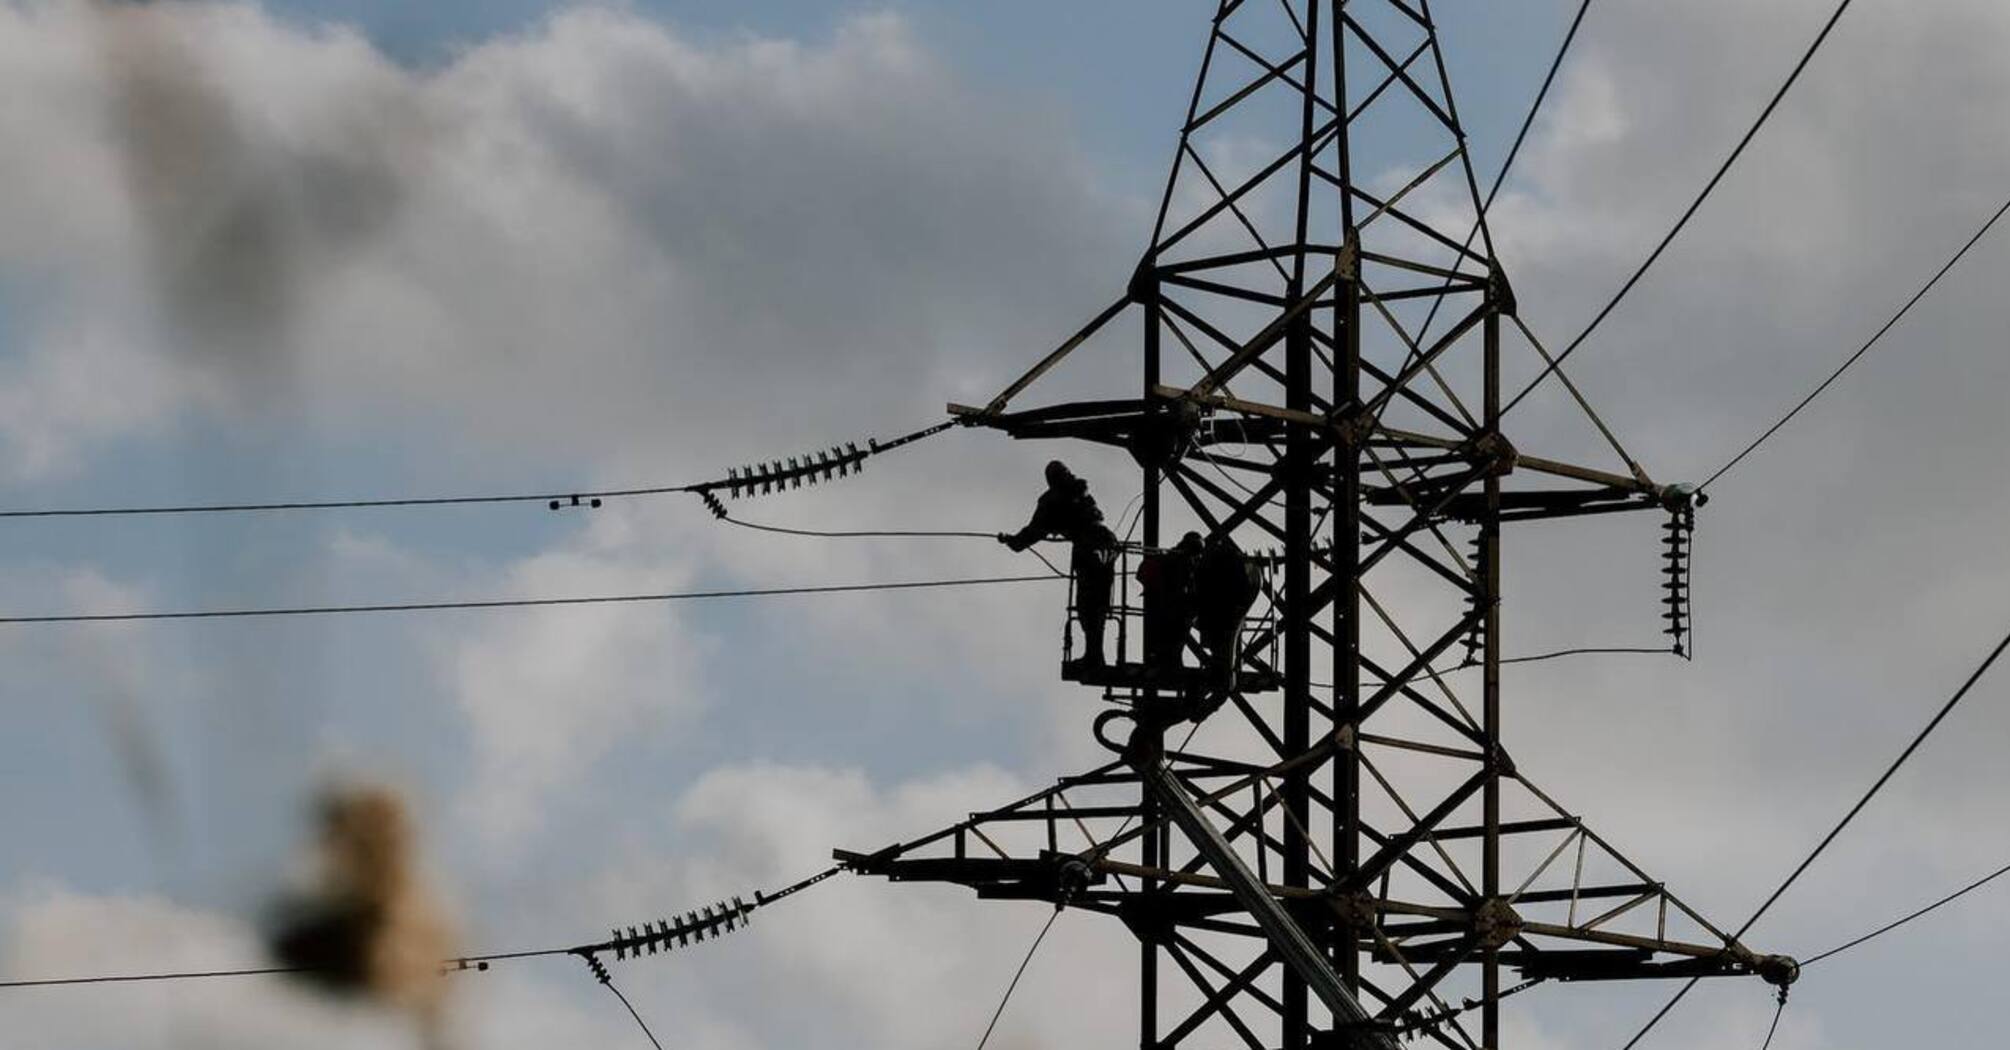 How much power generation has Ukraine lost